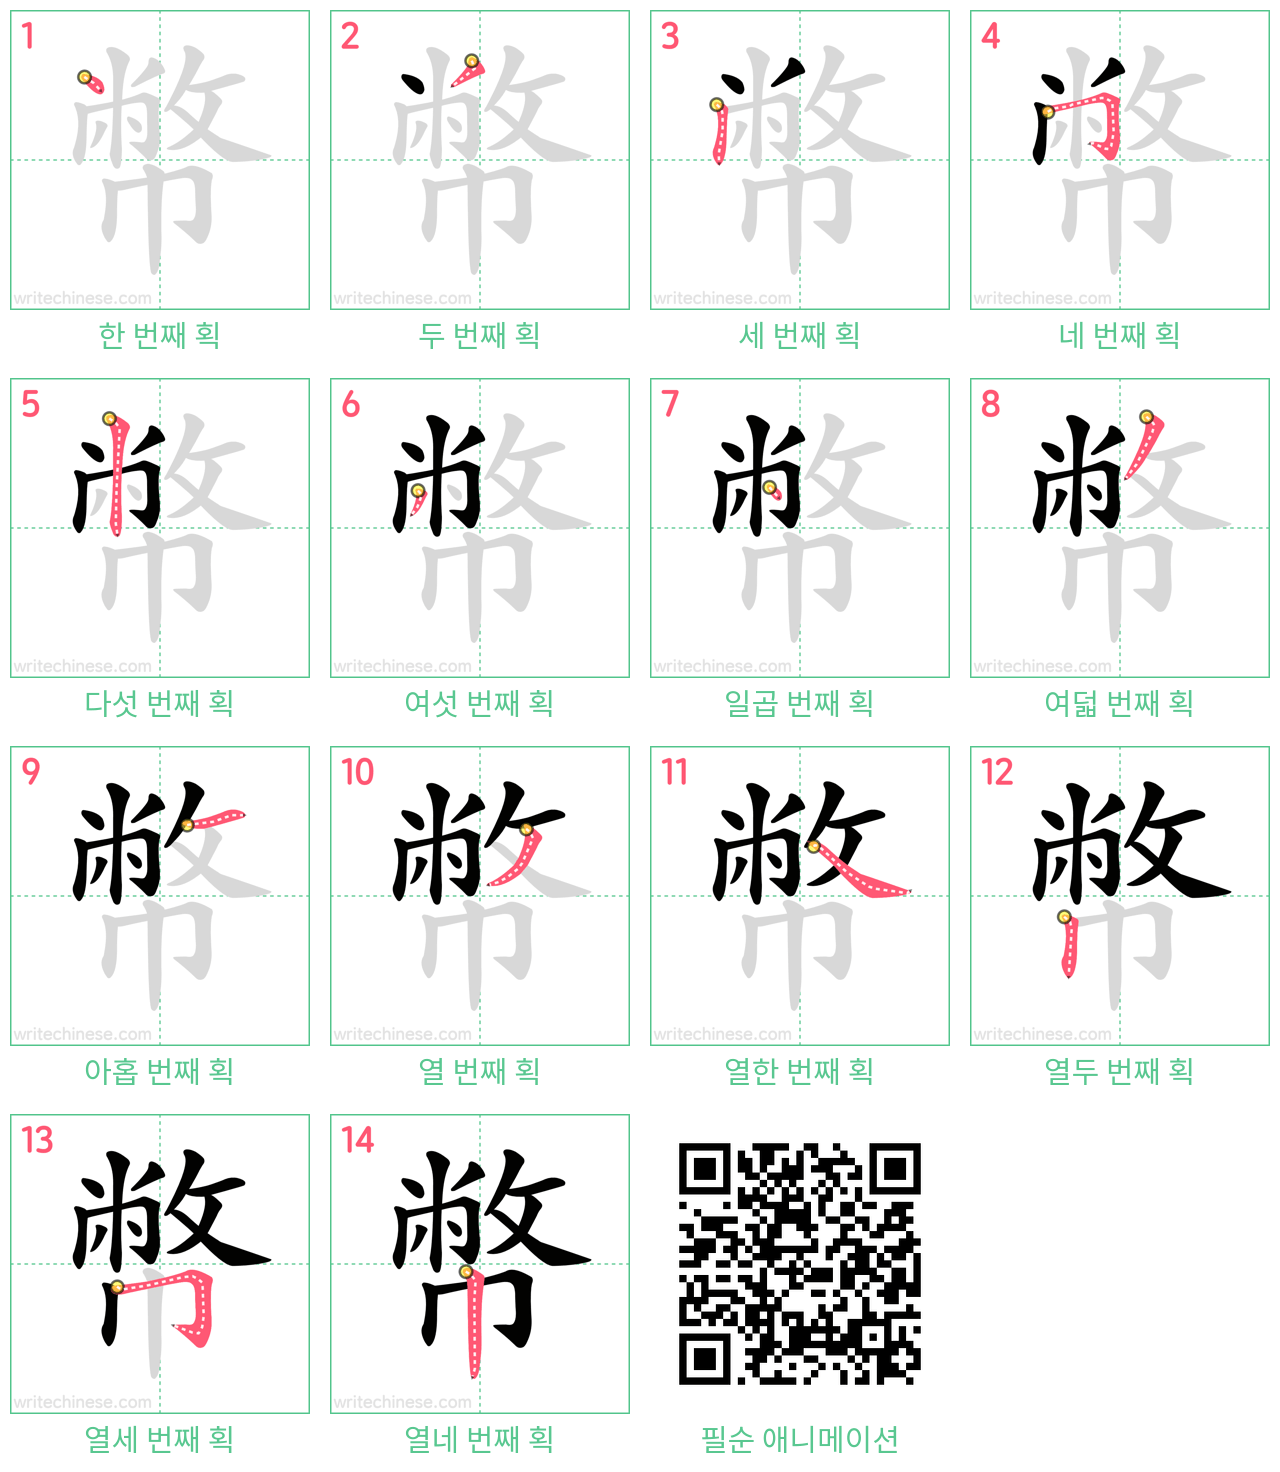 幣 step-by-step stroke order diagrams